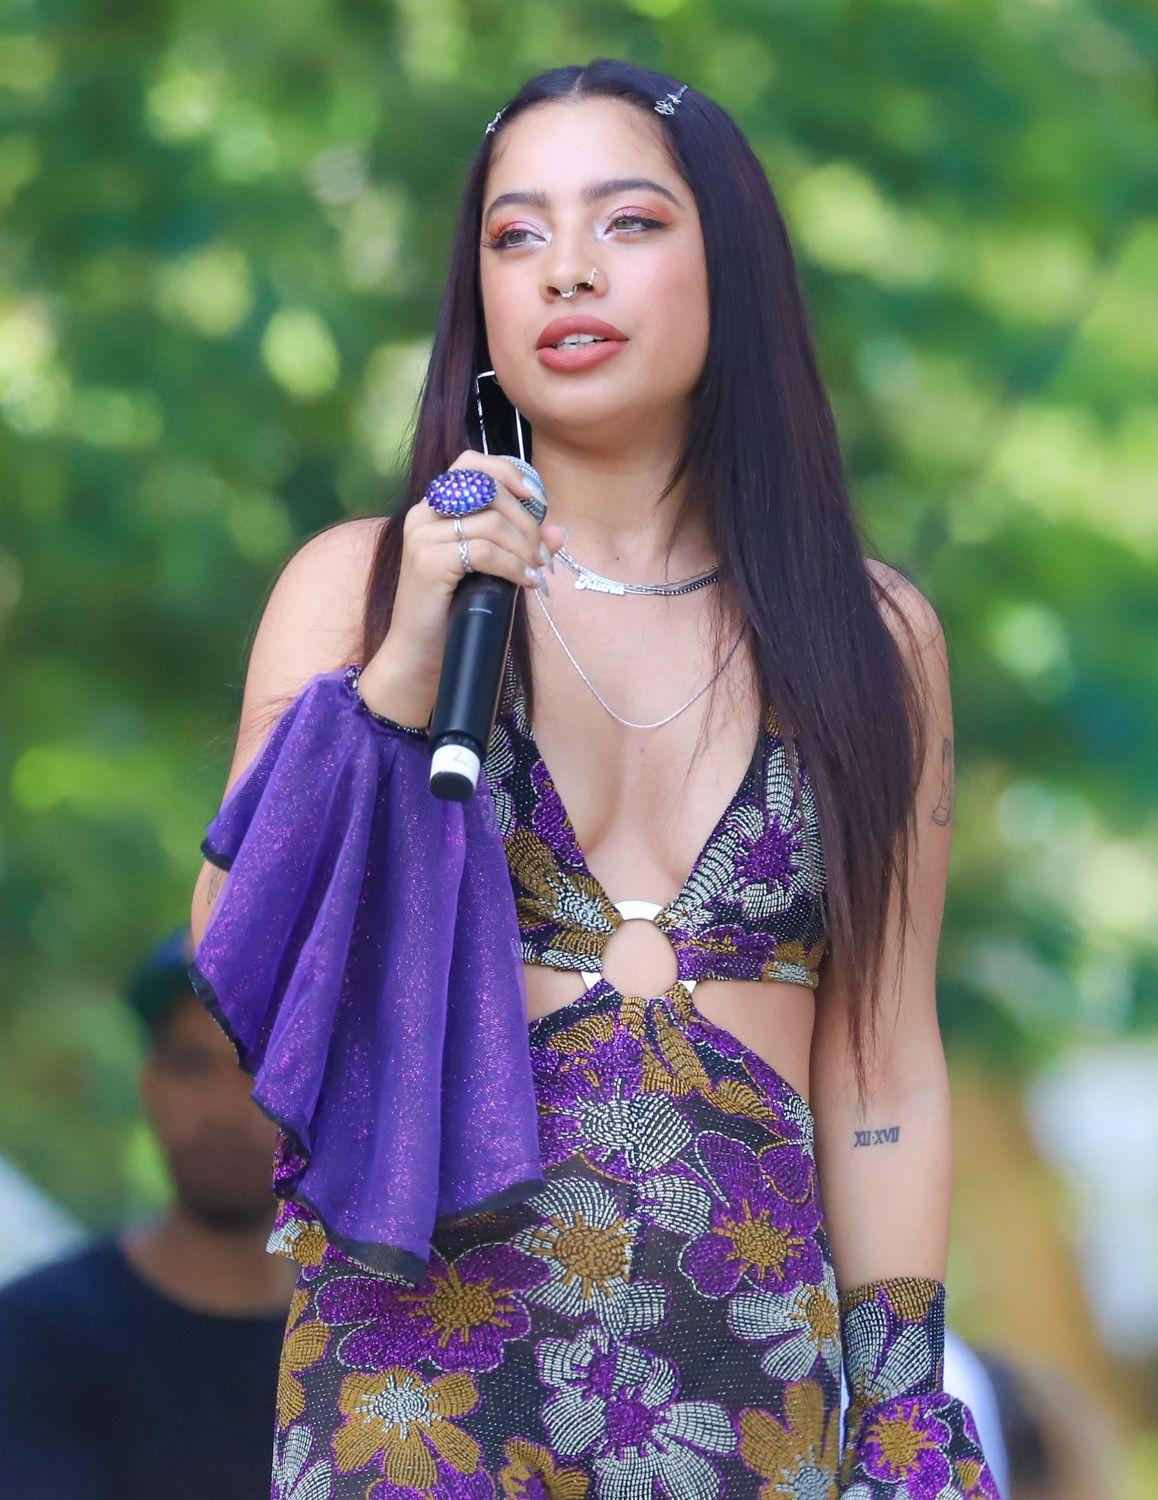 Kiana Ledé performs live at Sol Blume Festival, 2019